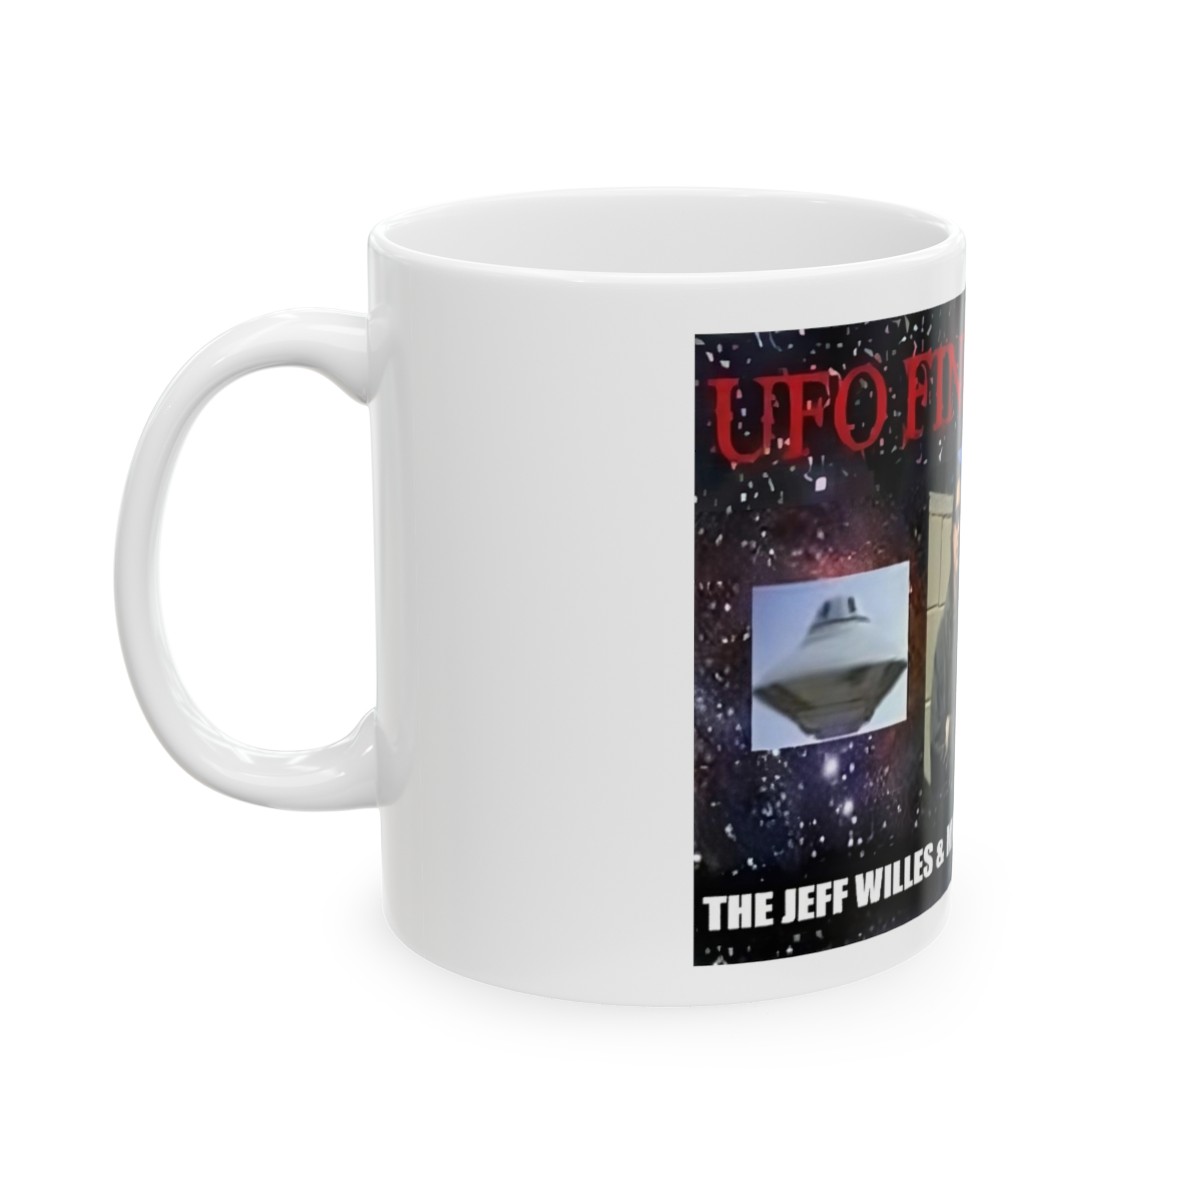 UFO FINDERS LIVE Ceramic Mug 11oz product thumbnail image